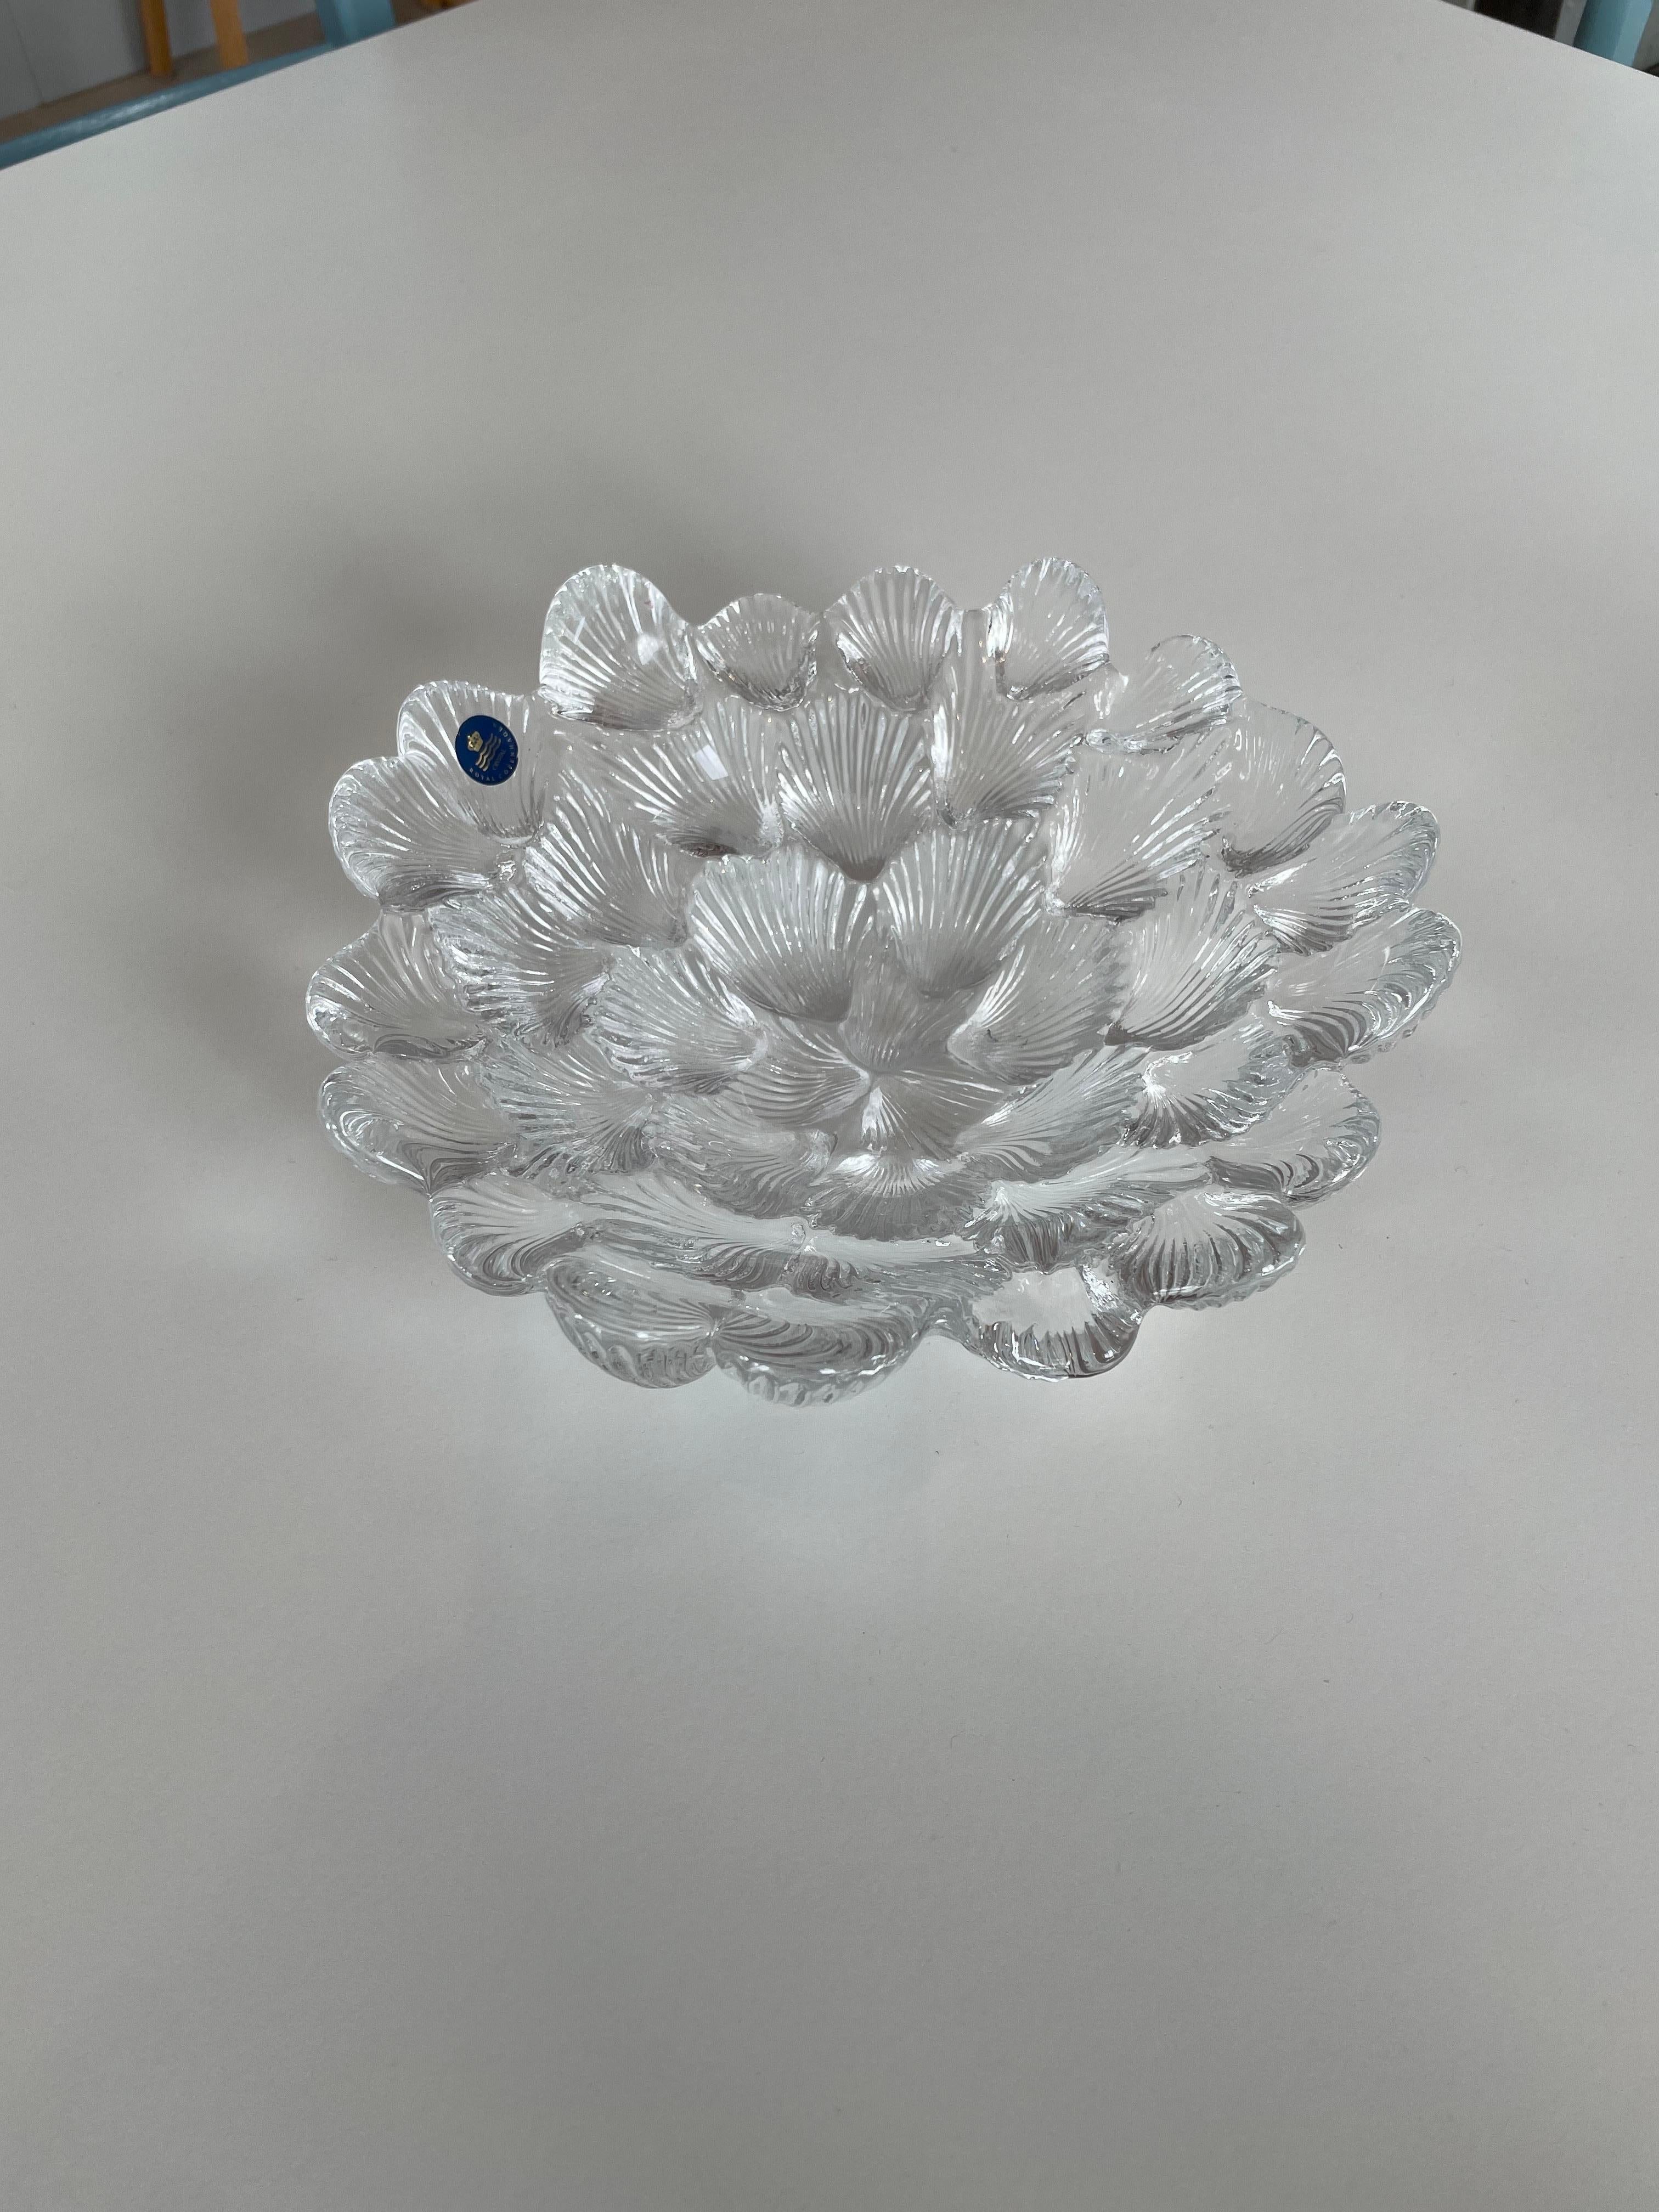 Cuenco de cristal de Royal Copenhagen de la década de 1980.
Diseñado por el renombrado artista Per Lutken y titulado Musling (Almeja).
Impresionante cuenco de cristal en forma de masa de conchas de almeja. Con textura en la parte inferior y cristal